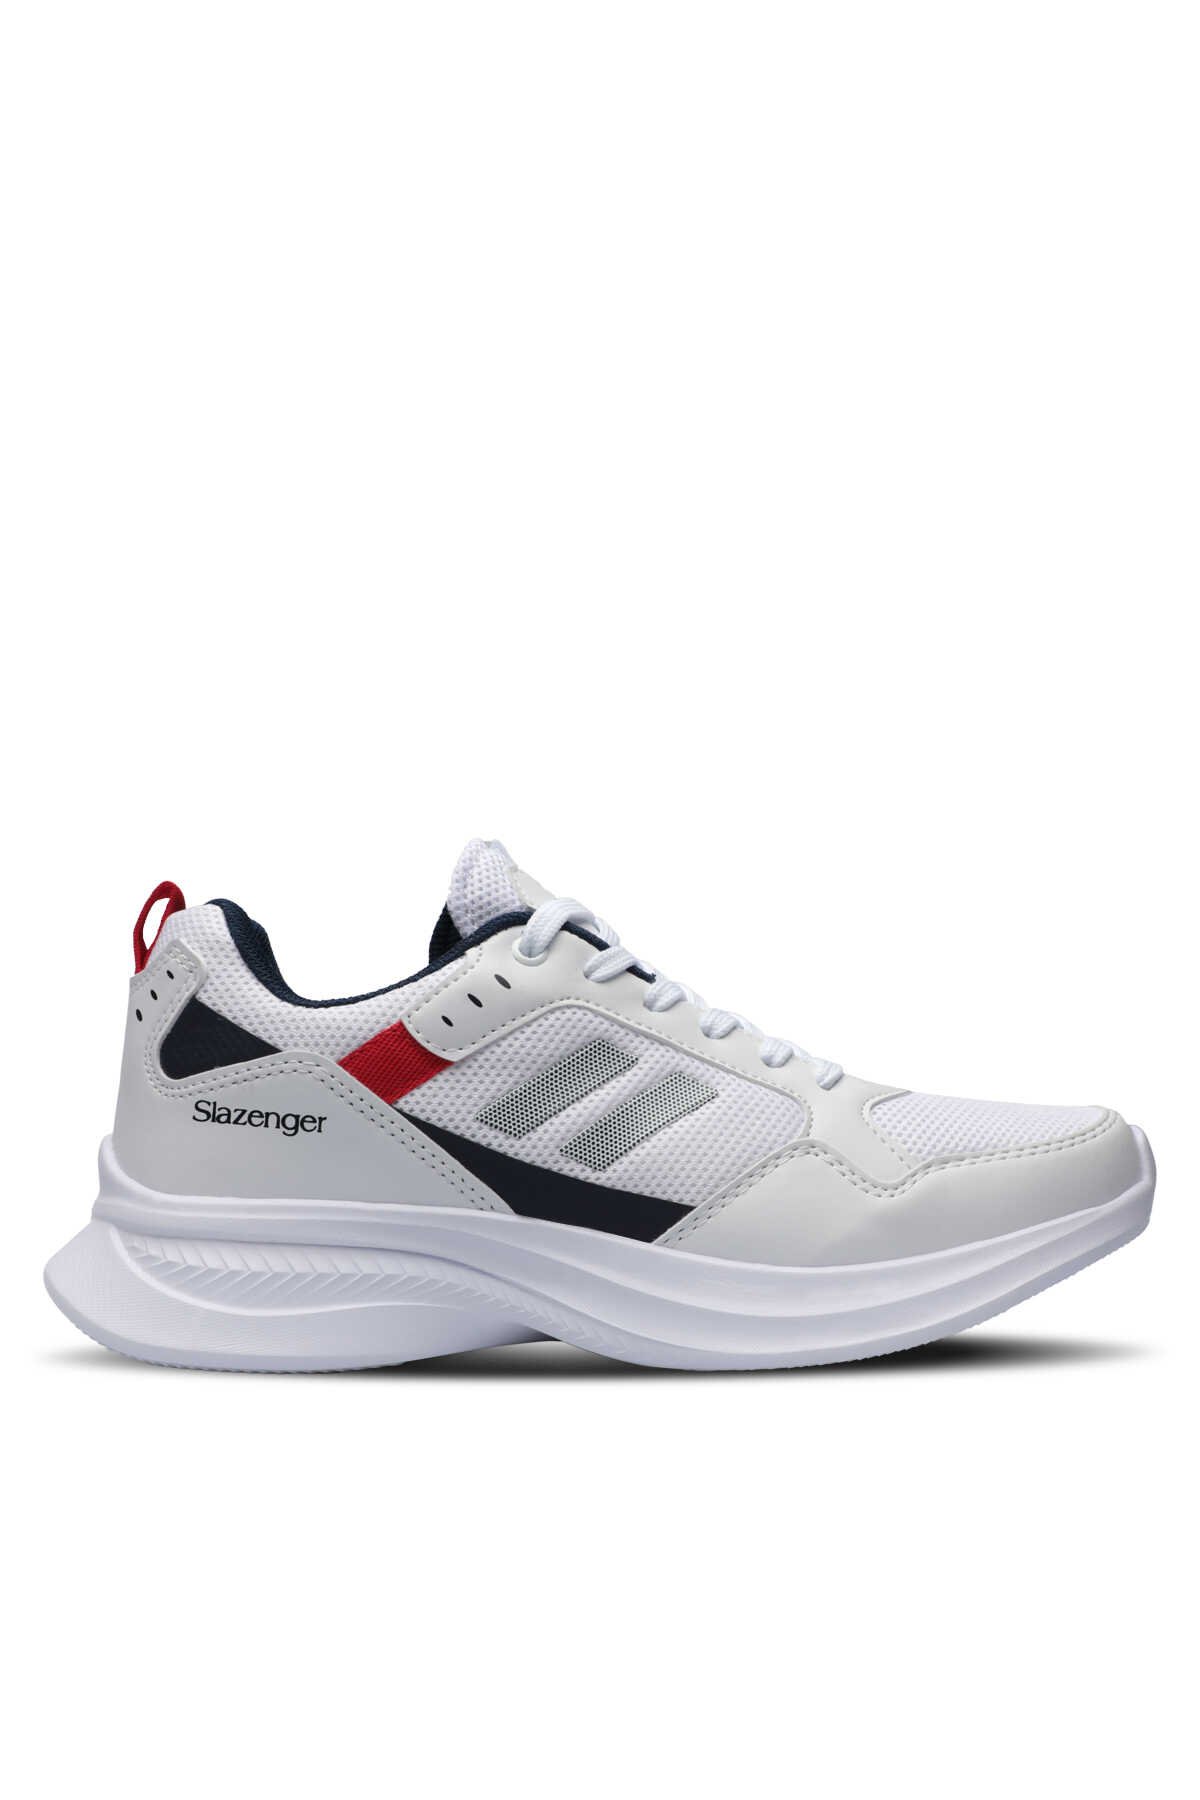 Slazenger - Slazenger ZAYN Sneaker Erkek Ayakkabı Beyaz / Lacivert / Kırmızı